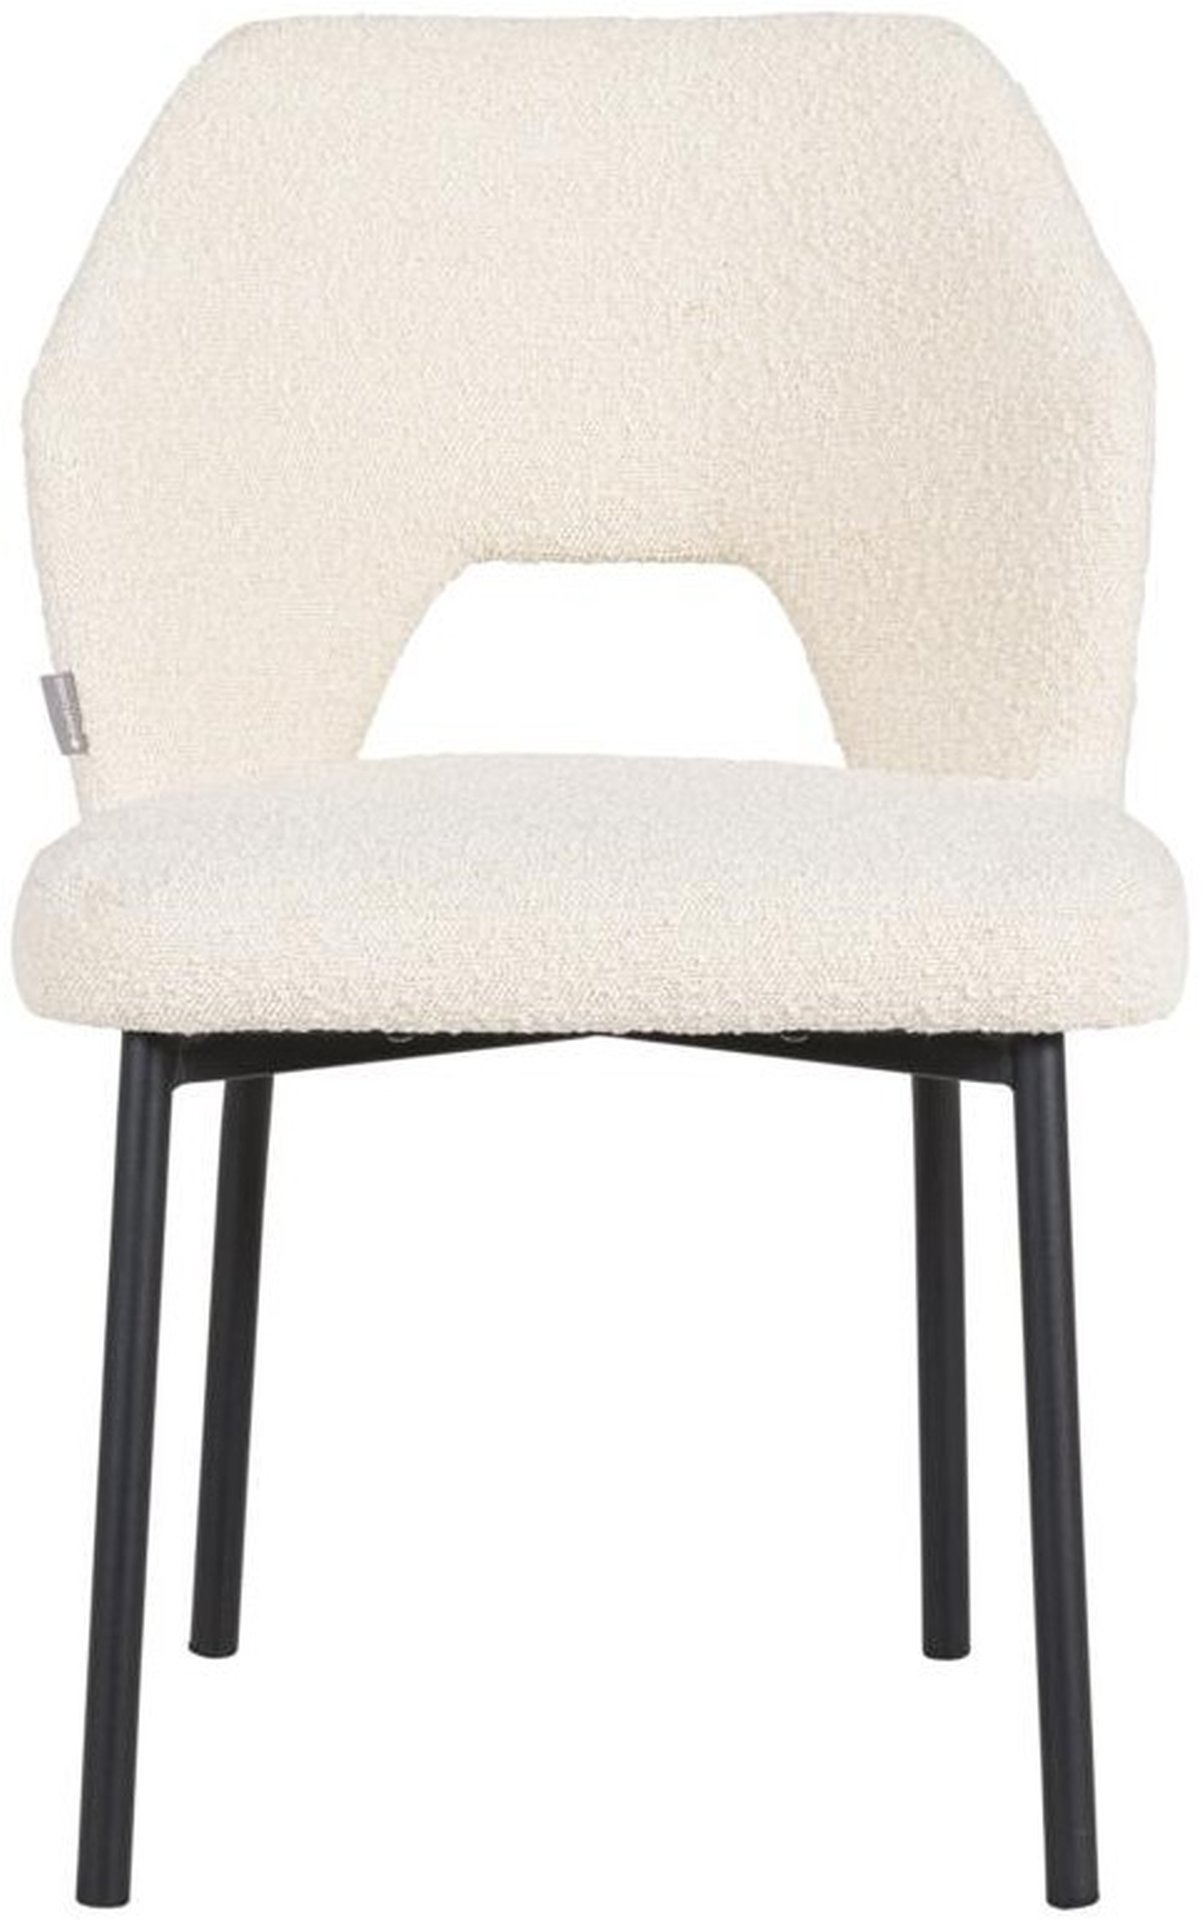 Der Esszimmerstuhl Bloom überzeugt mit seinem modernem aber auch schlichtem Design. Gefertigt wurde der Stuhl aus einem Boucle Stoff, welcher einen Natur Farbton besitzt. Das Gestell ist aus Metall und ist Schwarz.